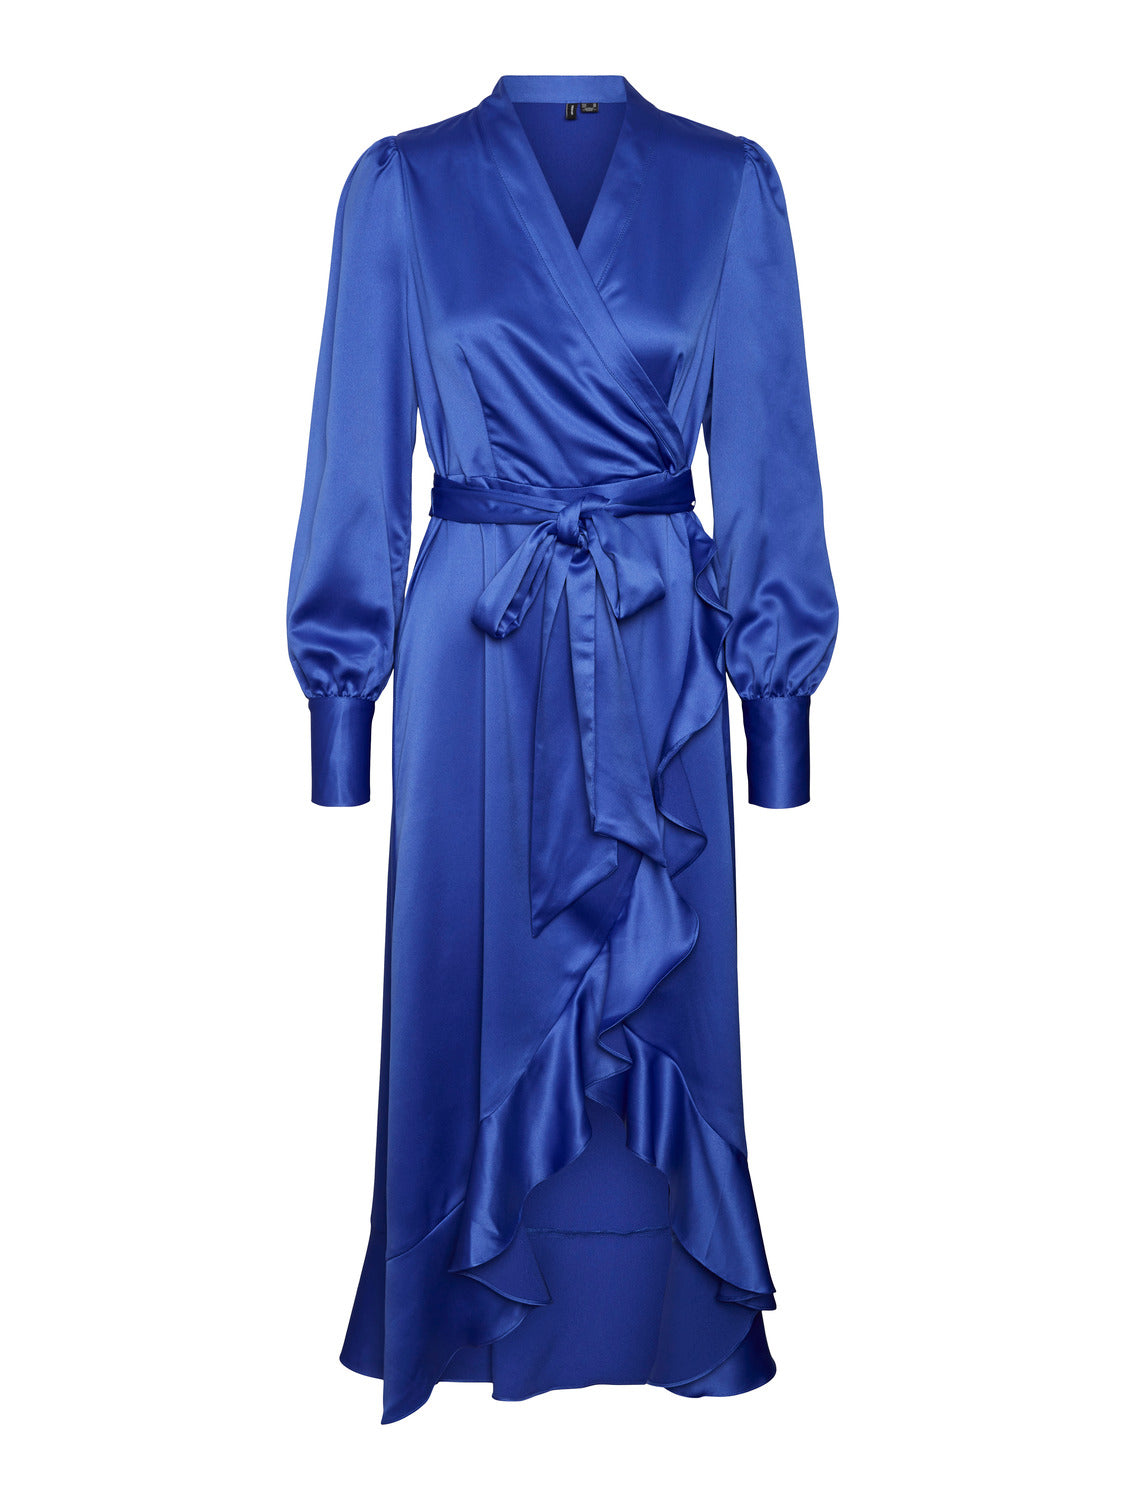 VMCELINE Dress - Dazzling Blue